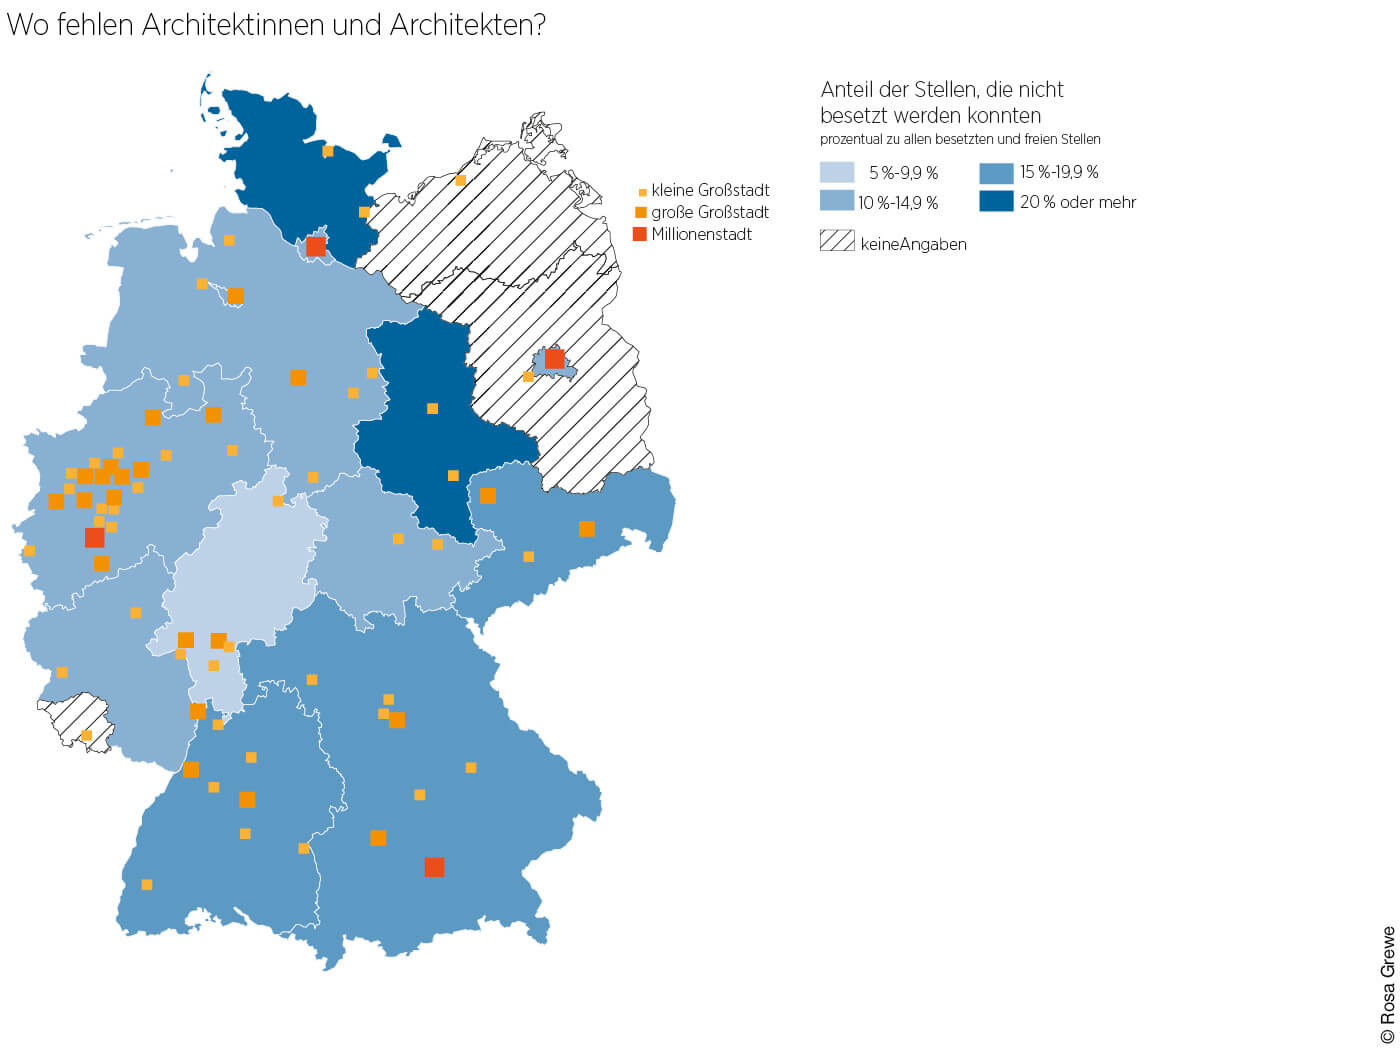 Deutschlandkarte "Wo fehlen Architekten"